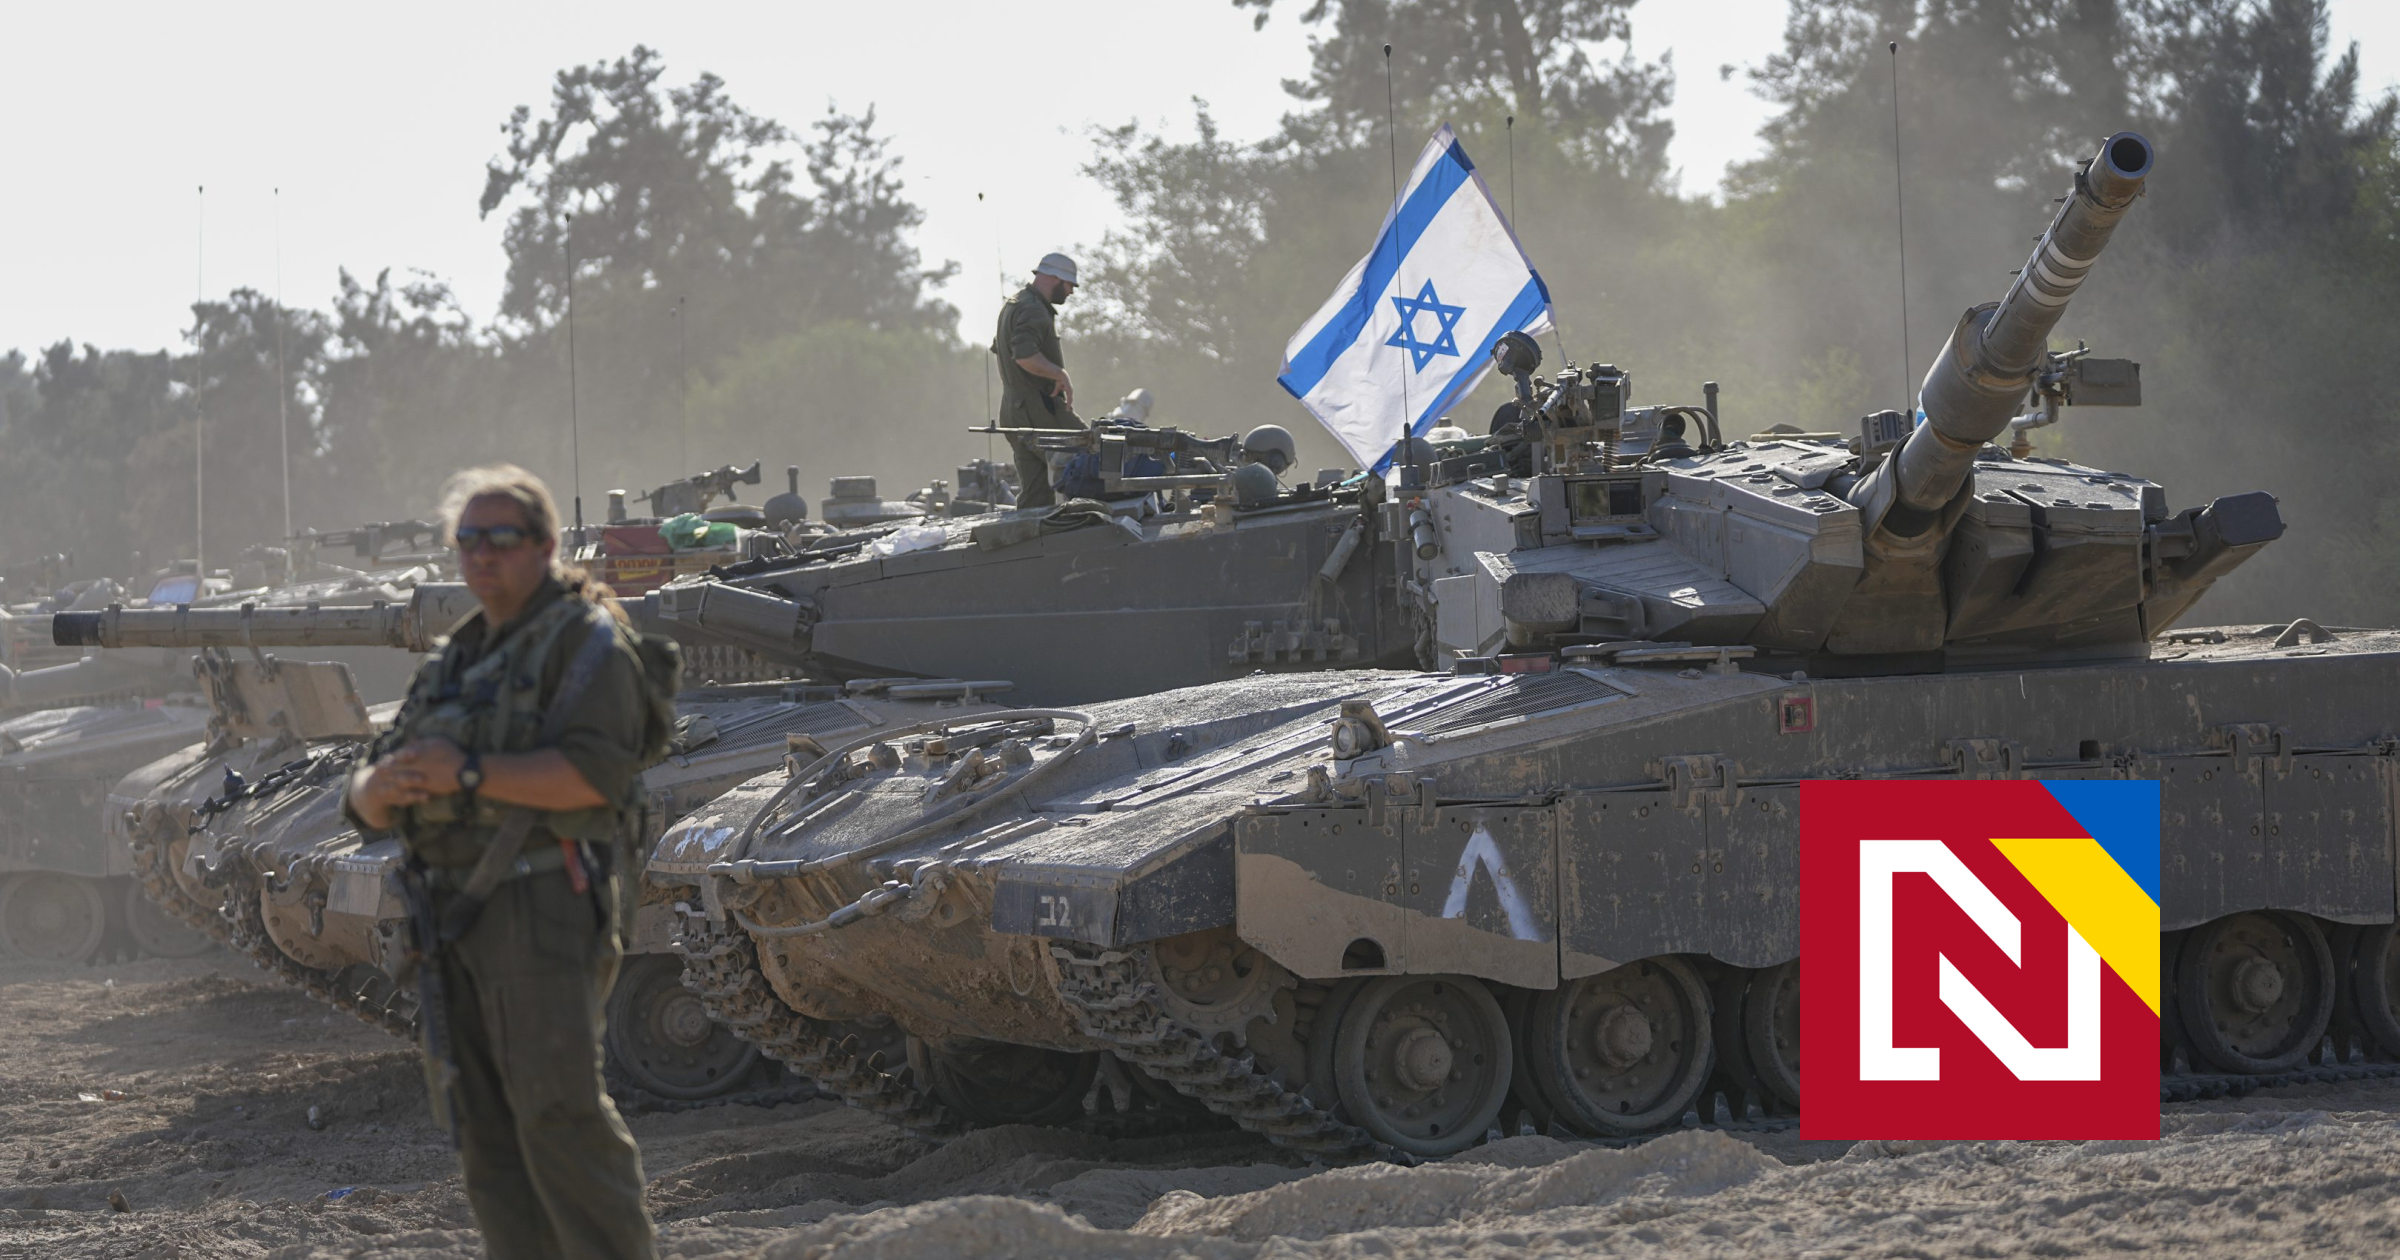 L’invasion totale n’a pas encore lieu.  Comment se poursuit l’opération terrestre israélienne dans la bande de Gaza